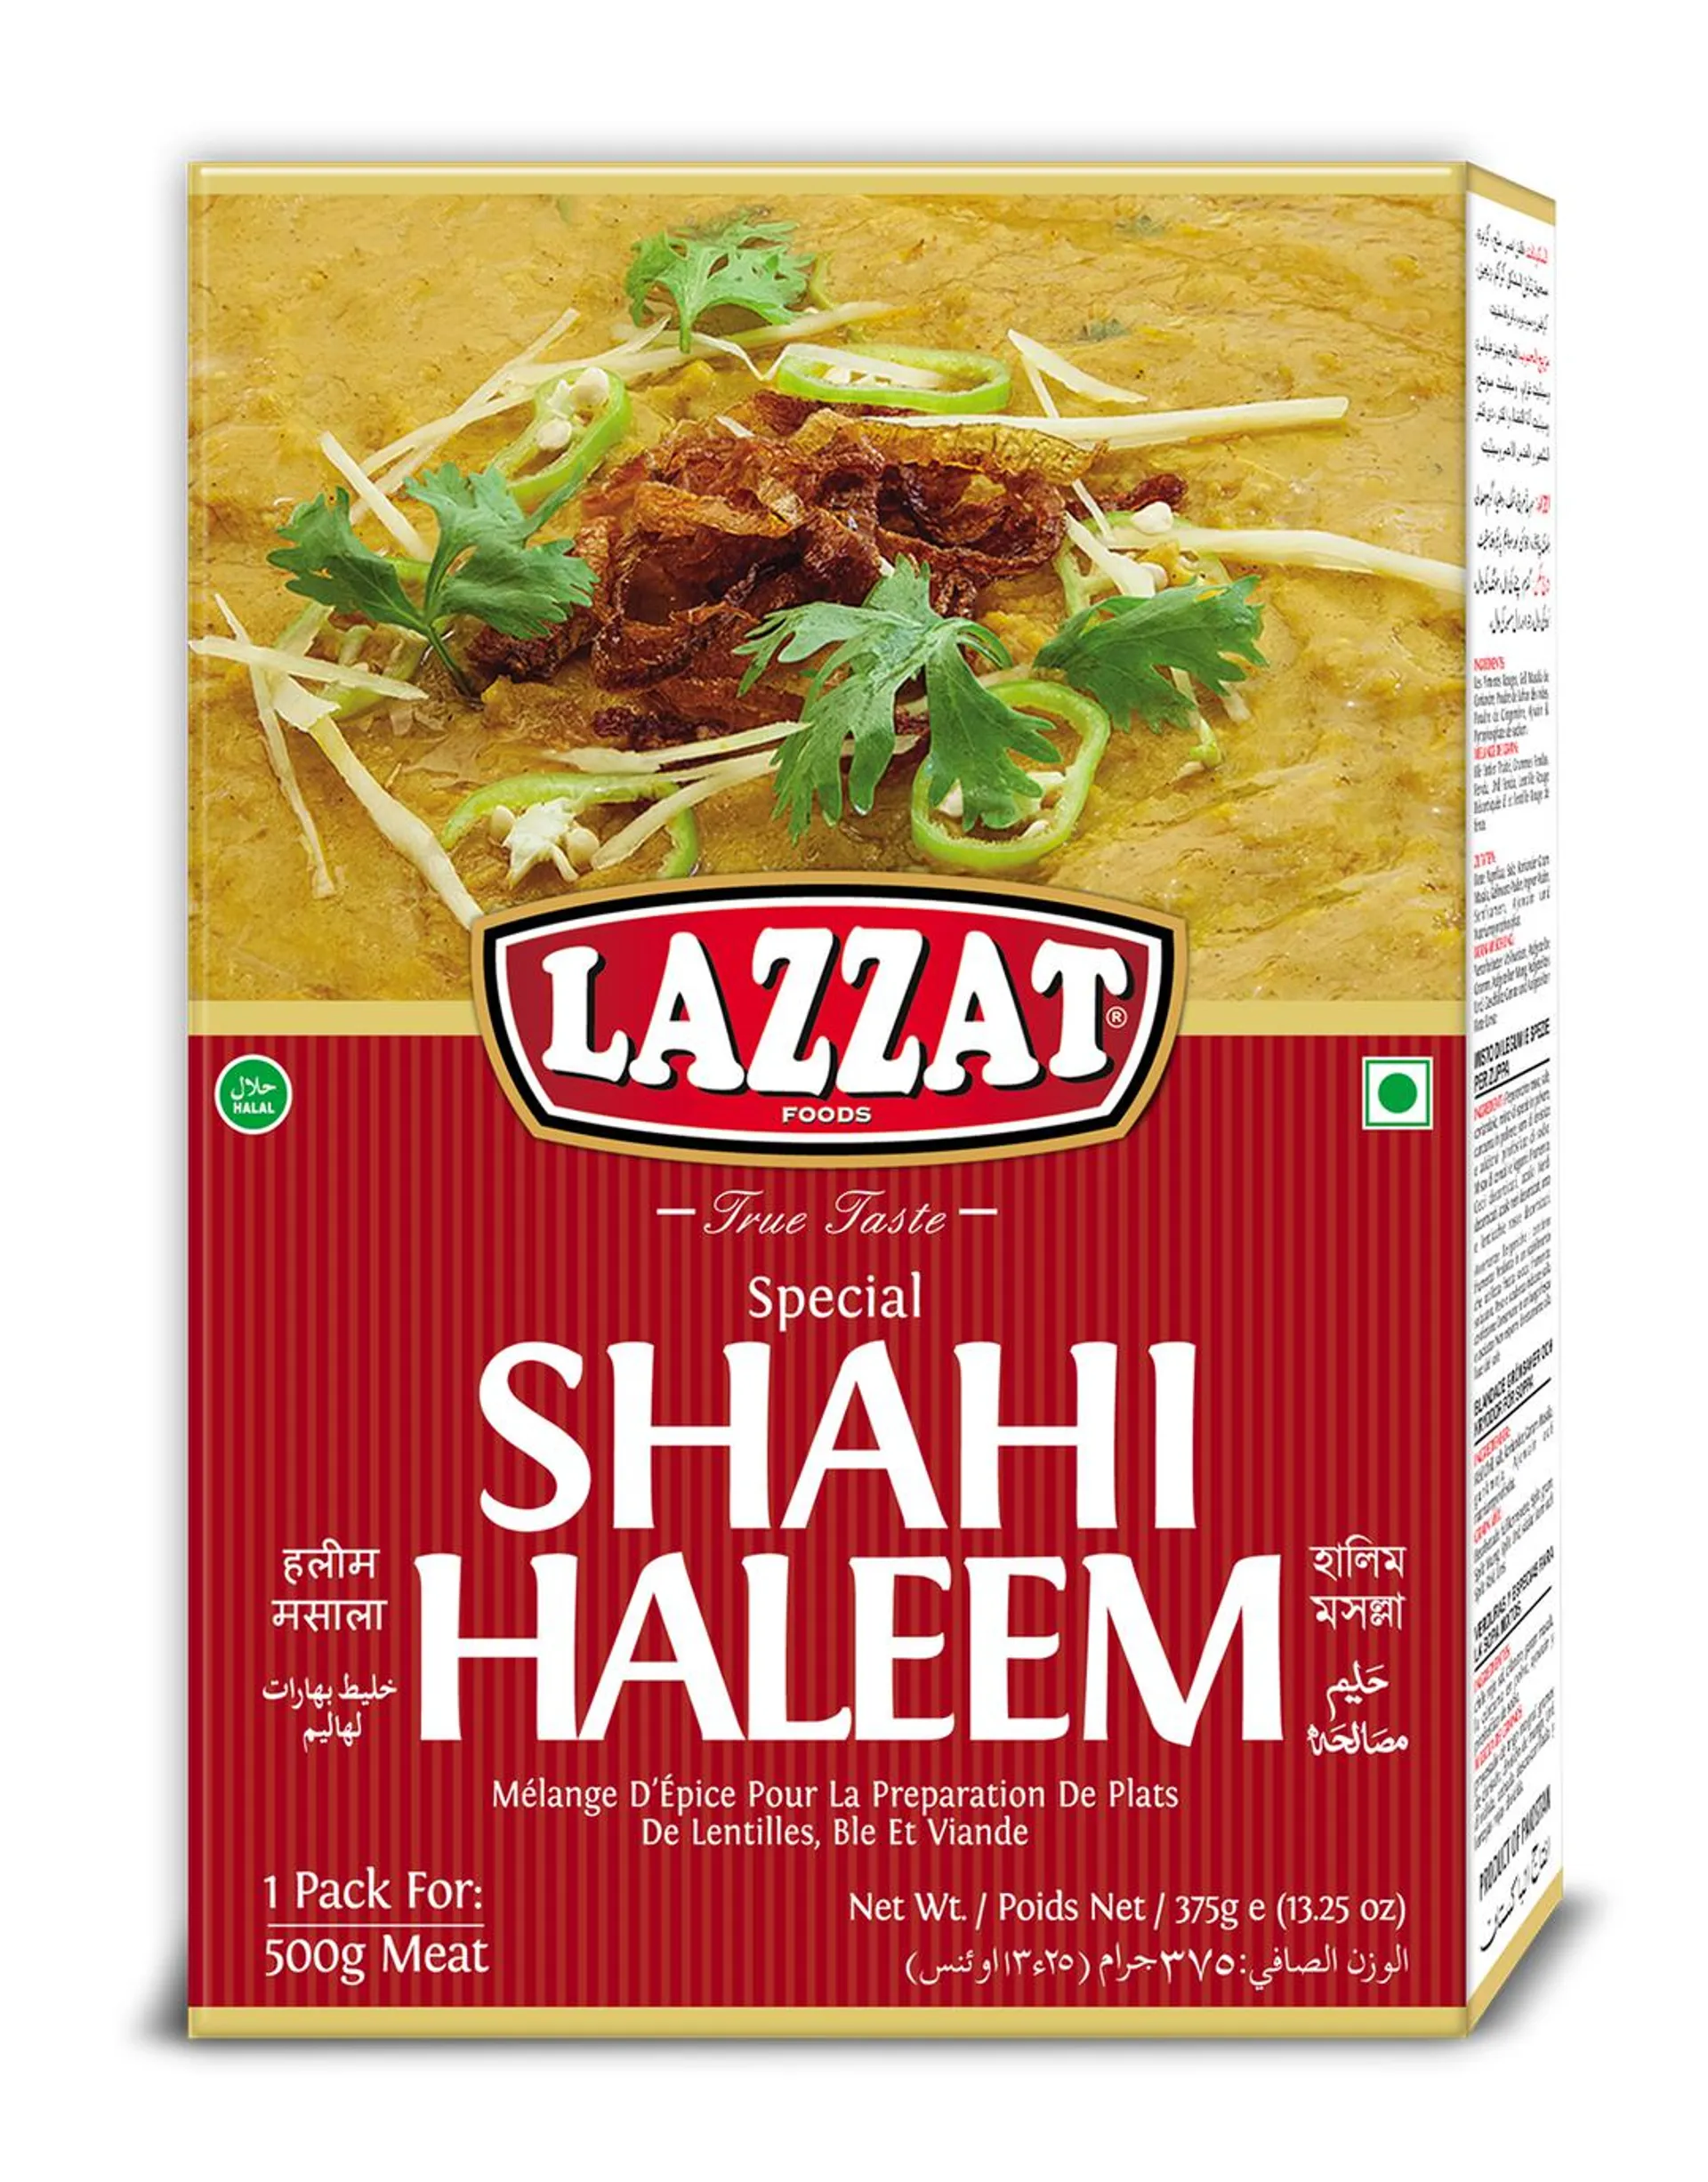 Lazzat SP Shahi Haleem 100g